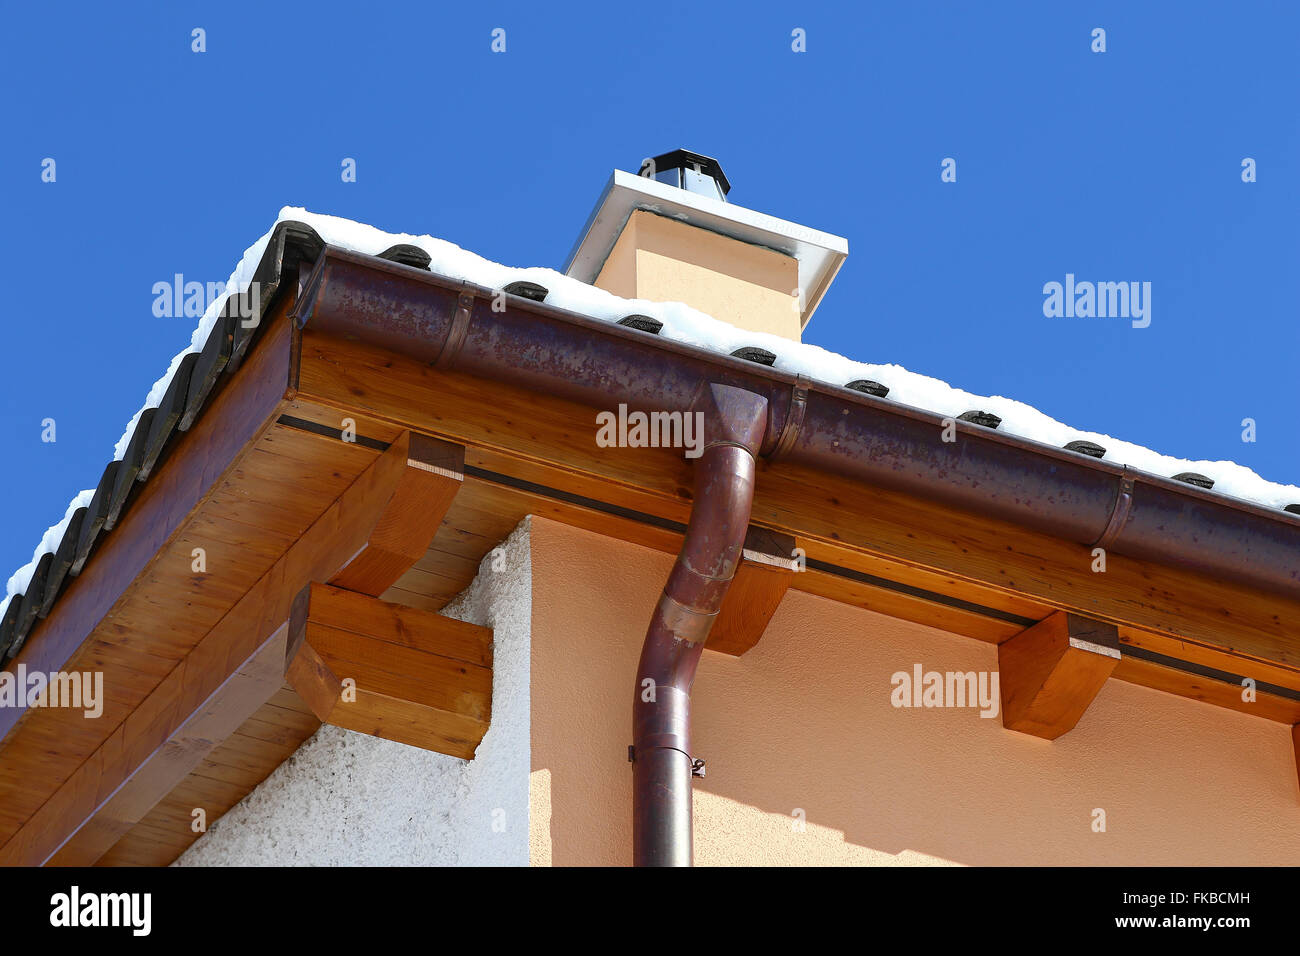 Neues Dach Top Detail mit Keramikfliesen, Schornstein und Kupfer Wasserrinne mit Schnee gegen blauen Himmel Stockfoto